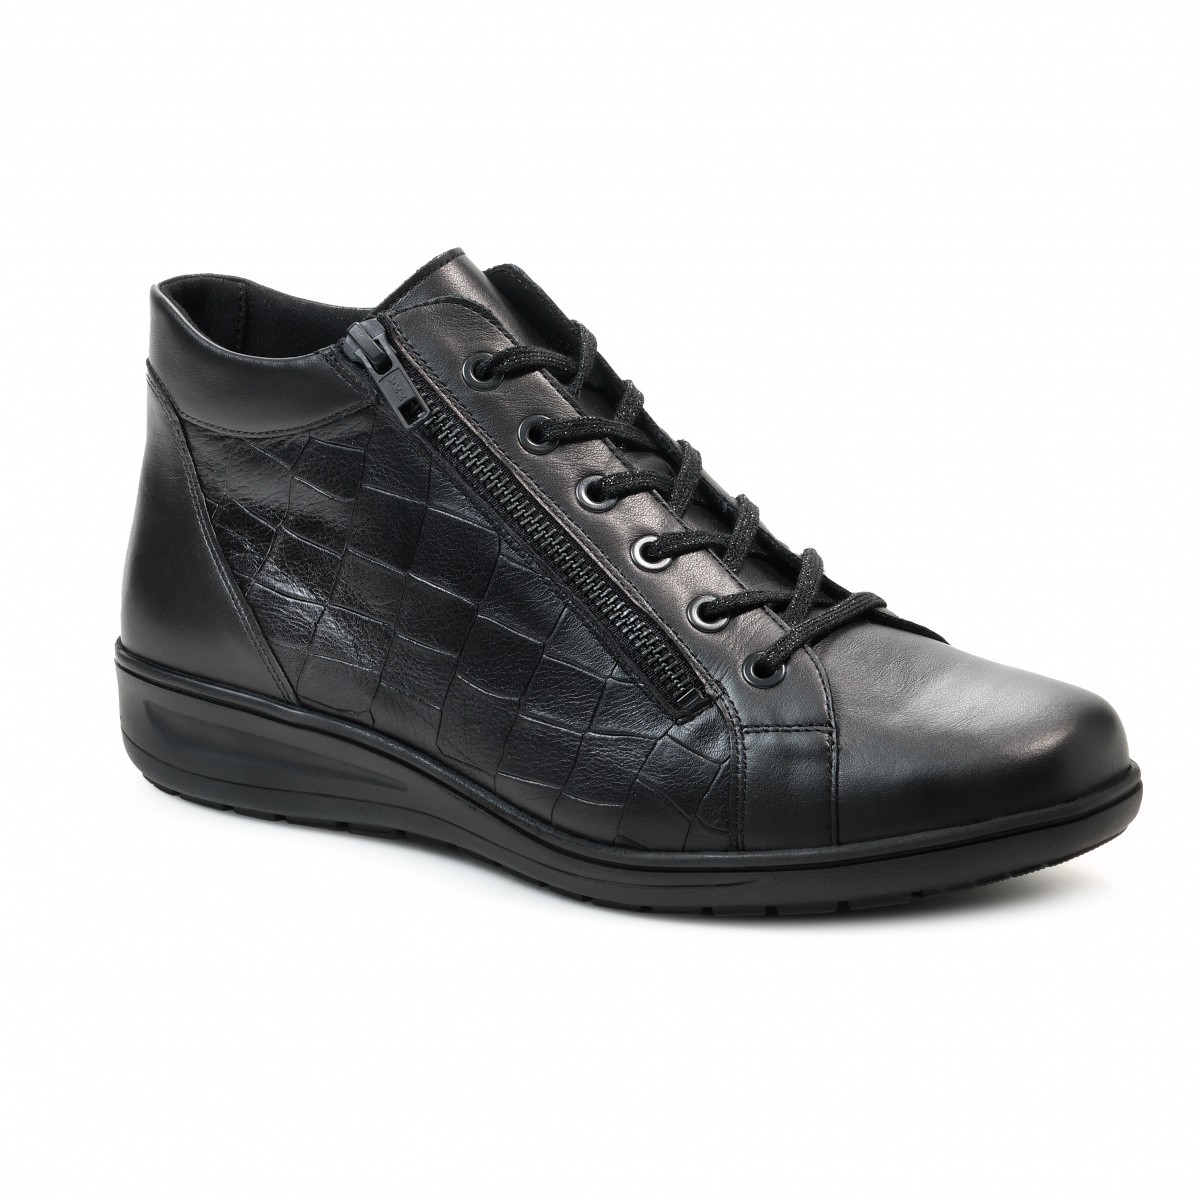 женские ботинки на шнуровке kibu stiefel solidus черные Женские ботинки Kate Stiefel, Solidus, черные